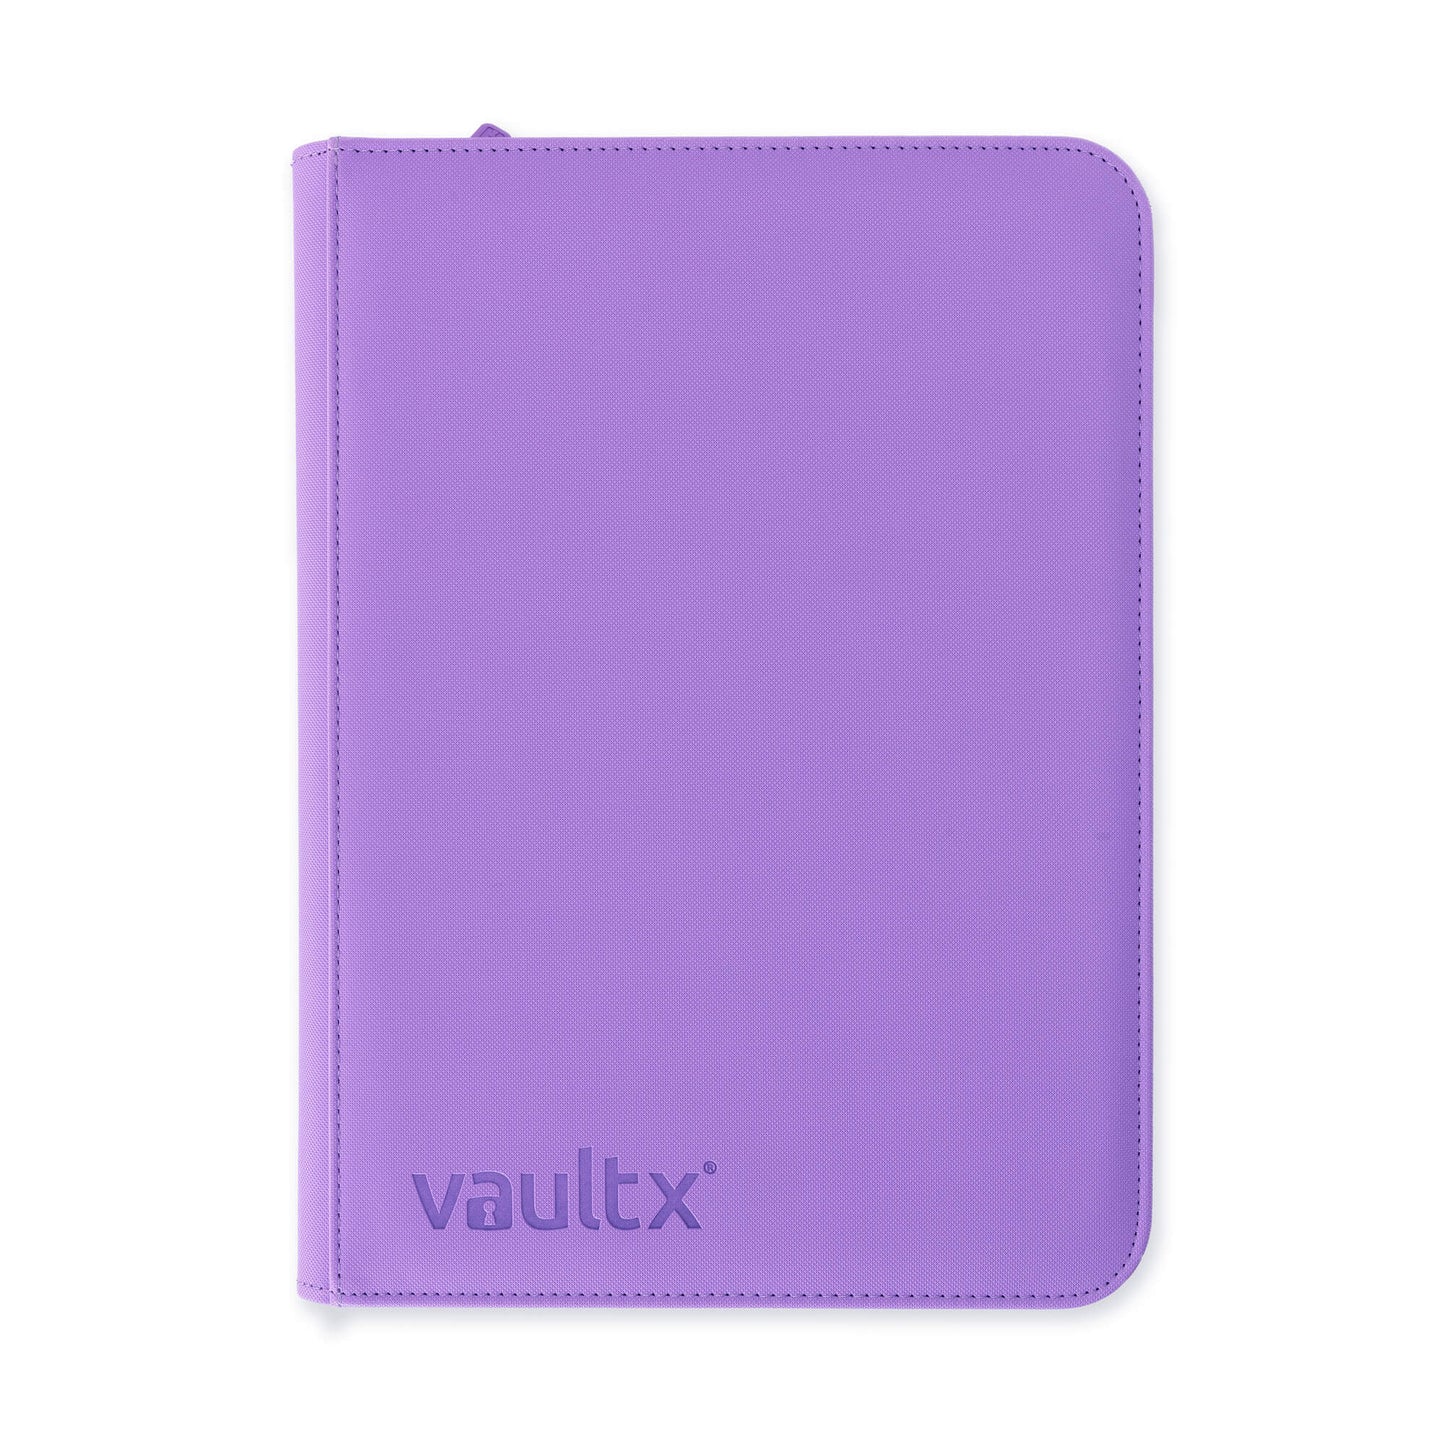 Vault X - 9 Pocket Exo-Tec Zip Binder - Just Purple